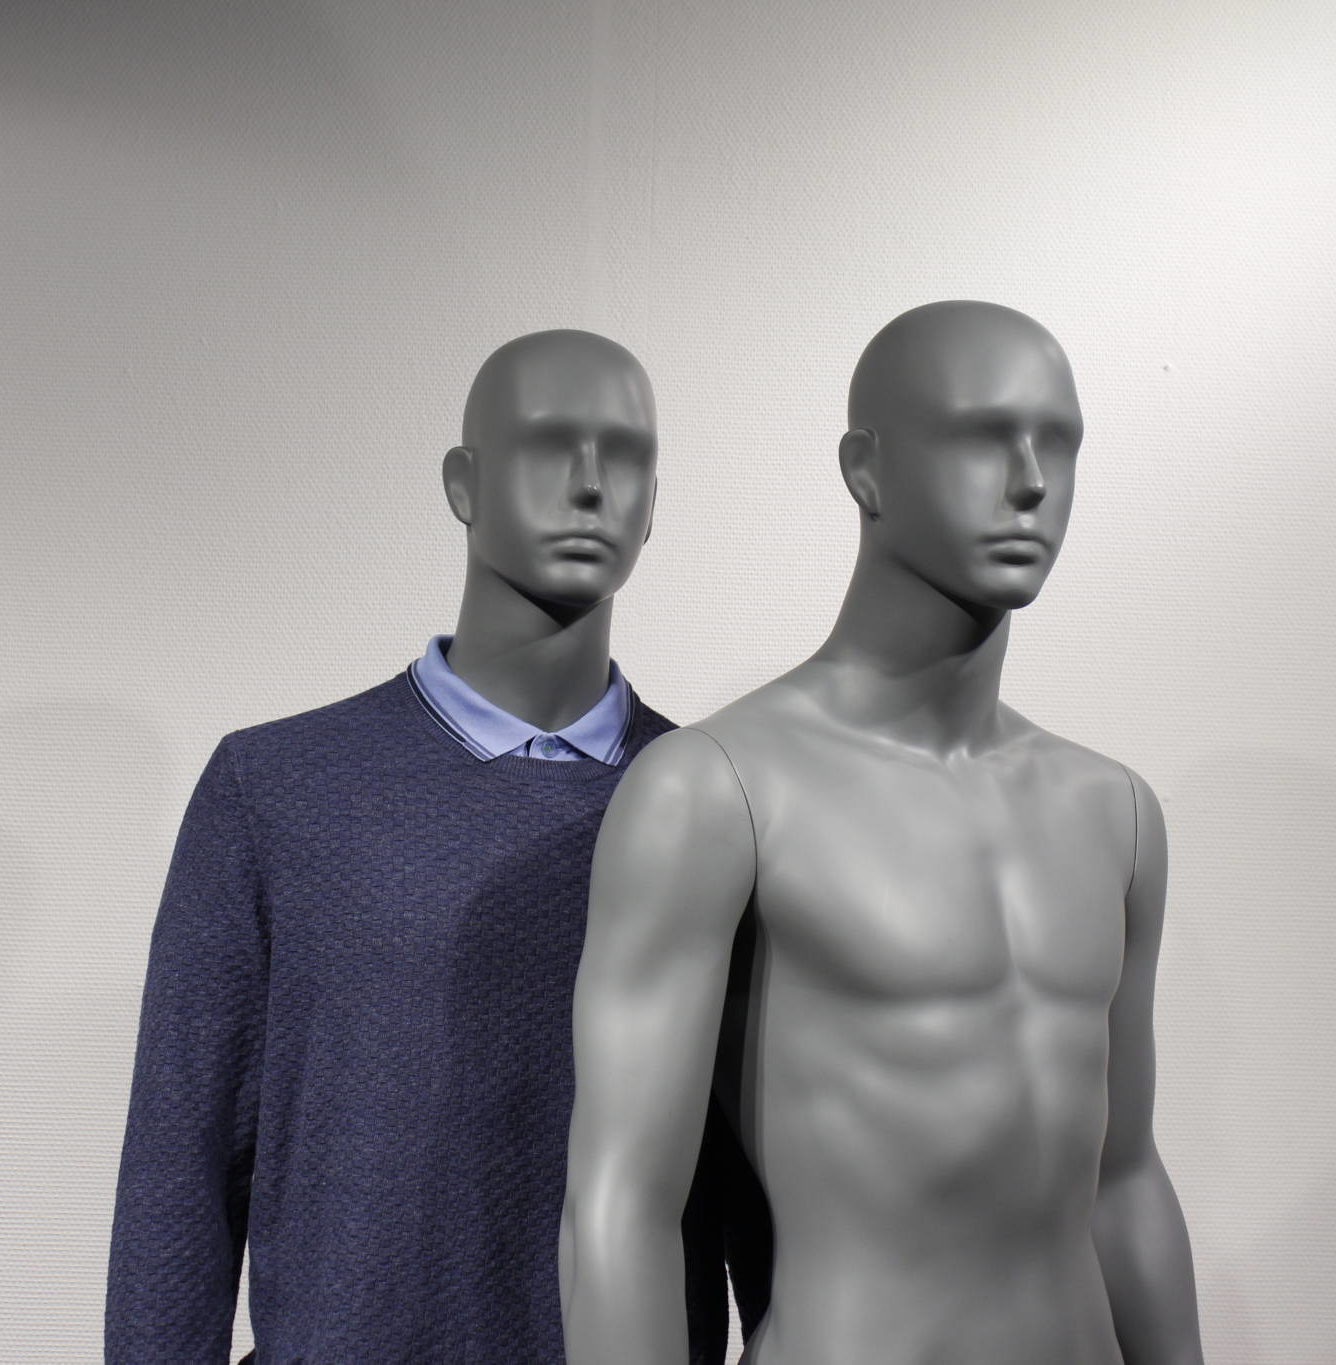 Flot abstrakt og billig herre mannequin i moderne modegrå farve. Fås i 2 positioner